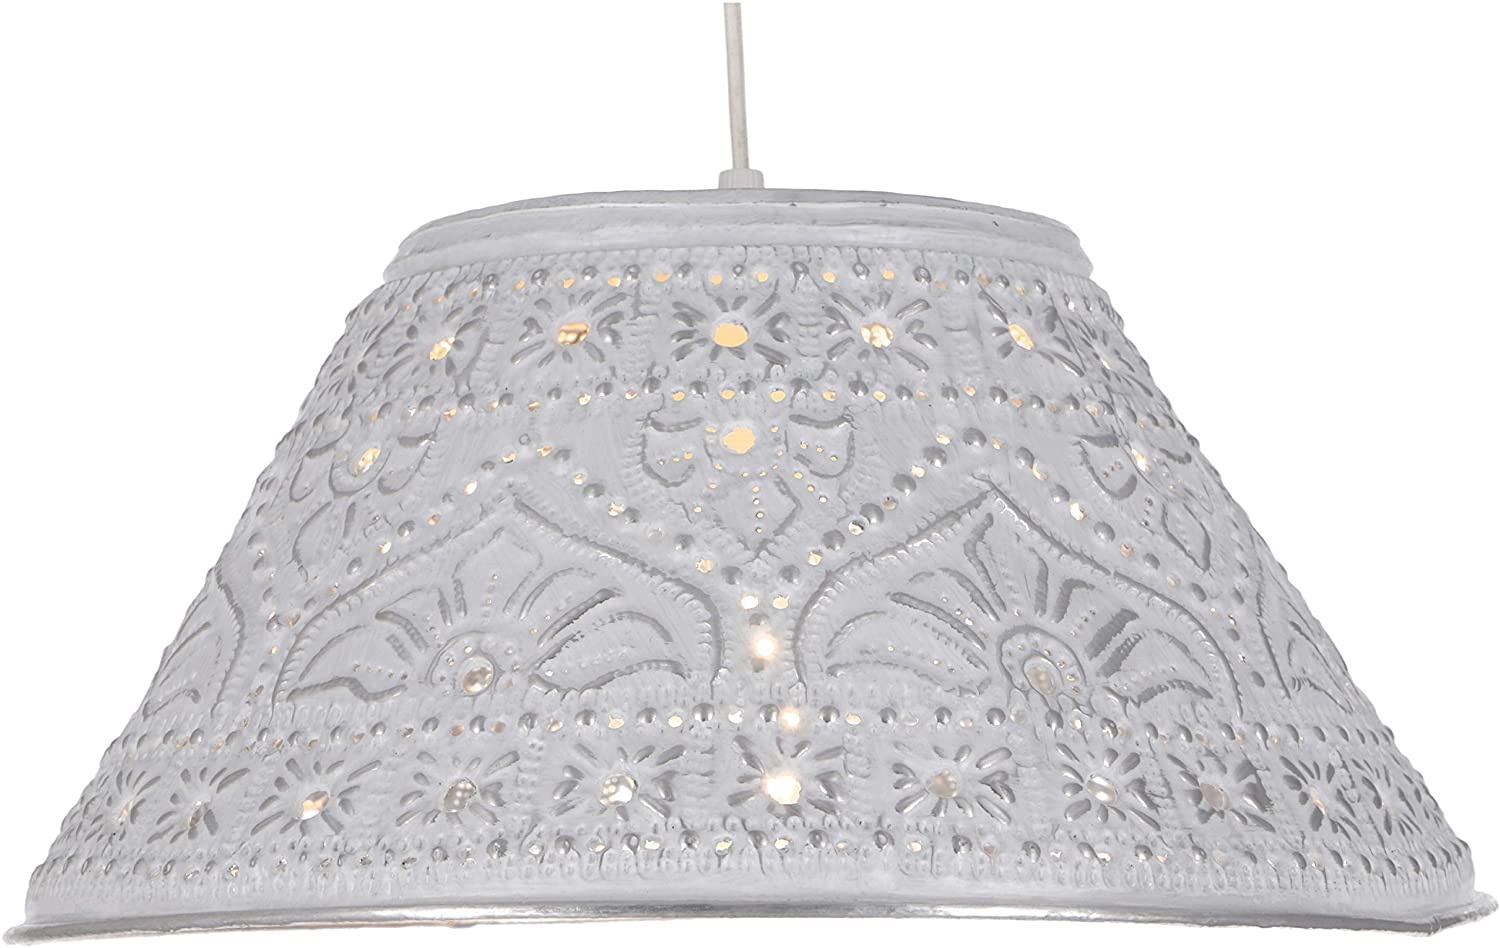 Guru-Shop Ceiling Lamp / Ceiling Lamp, Handmade From Embossed Aluminum Mode